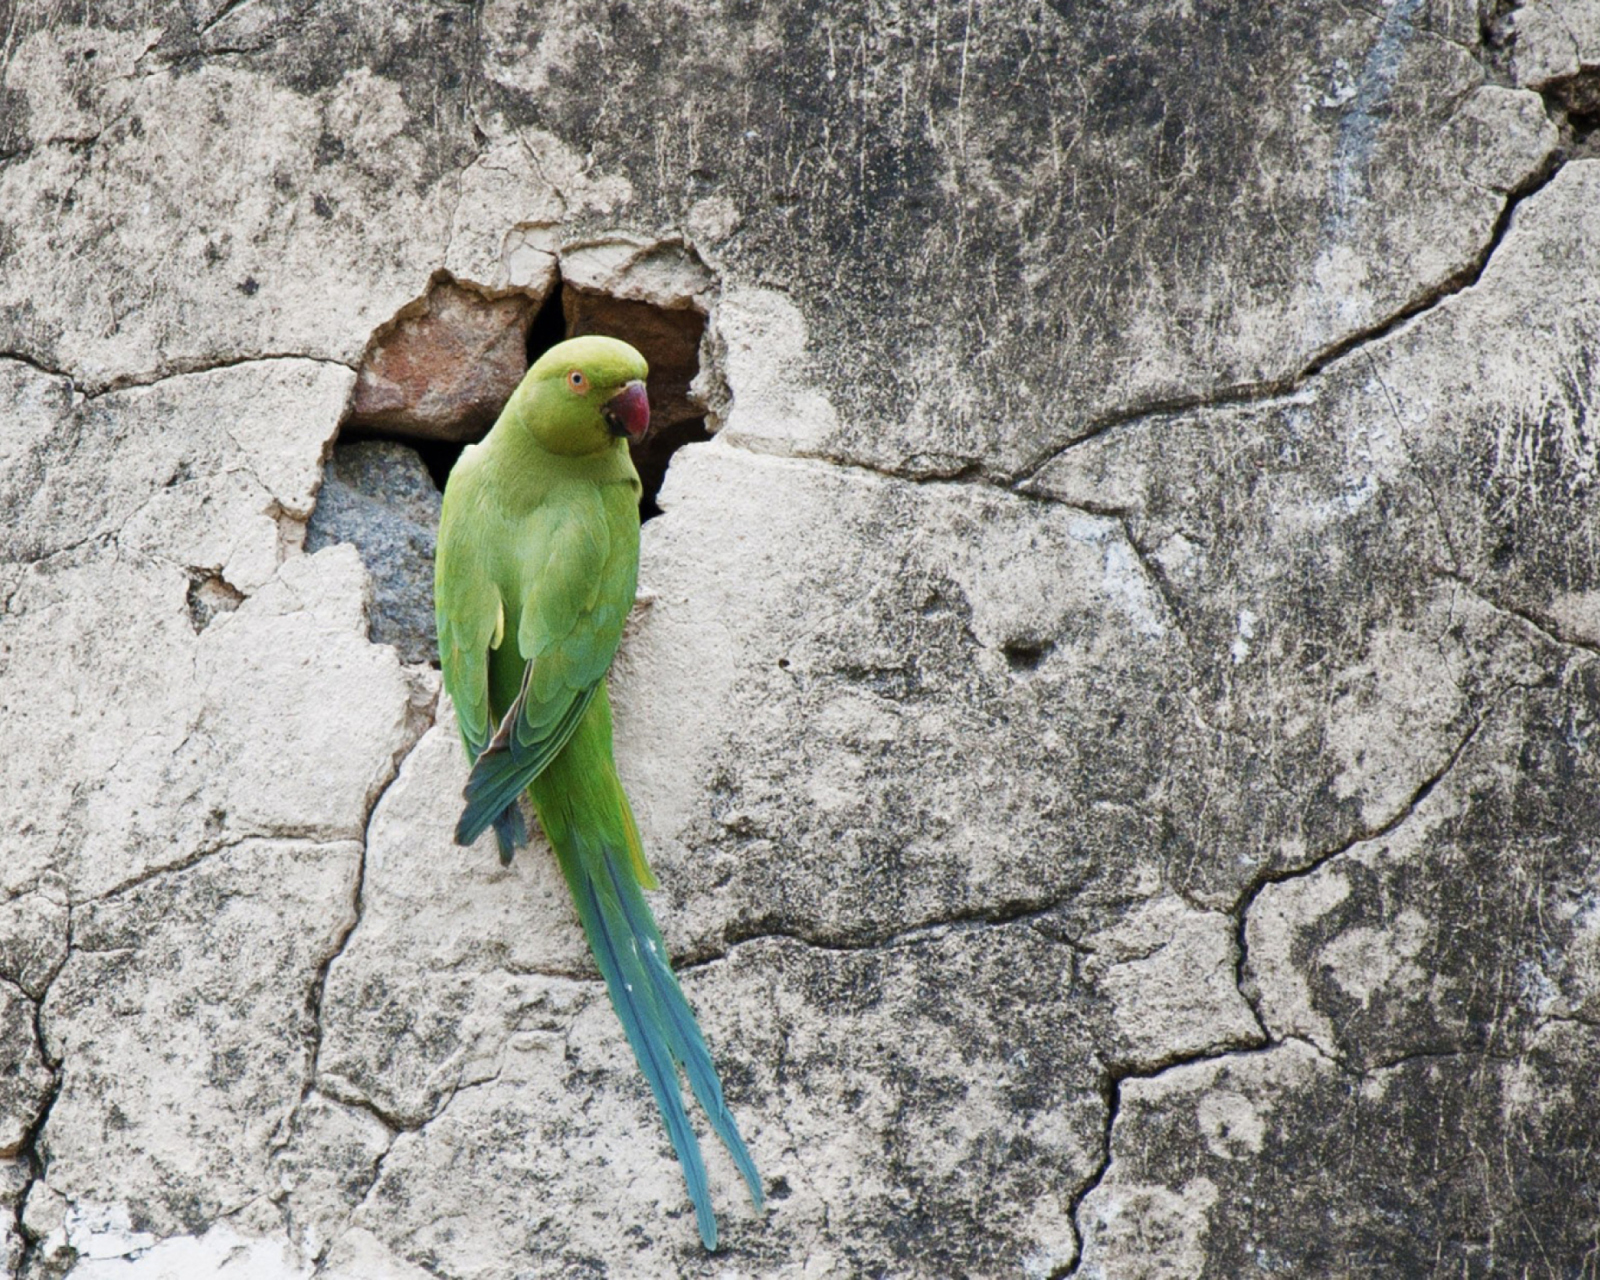 Green Parrot wallpaper 1600x1280